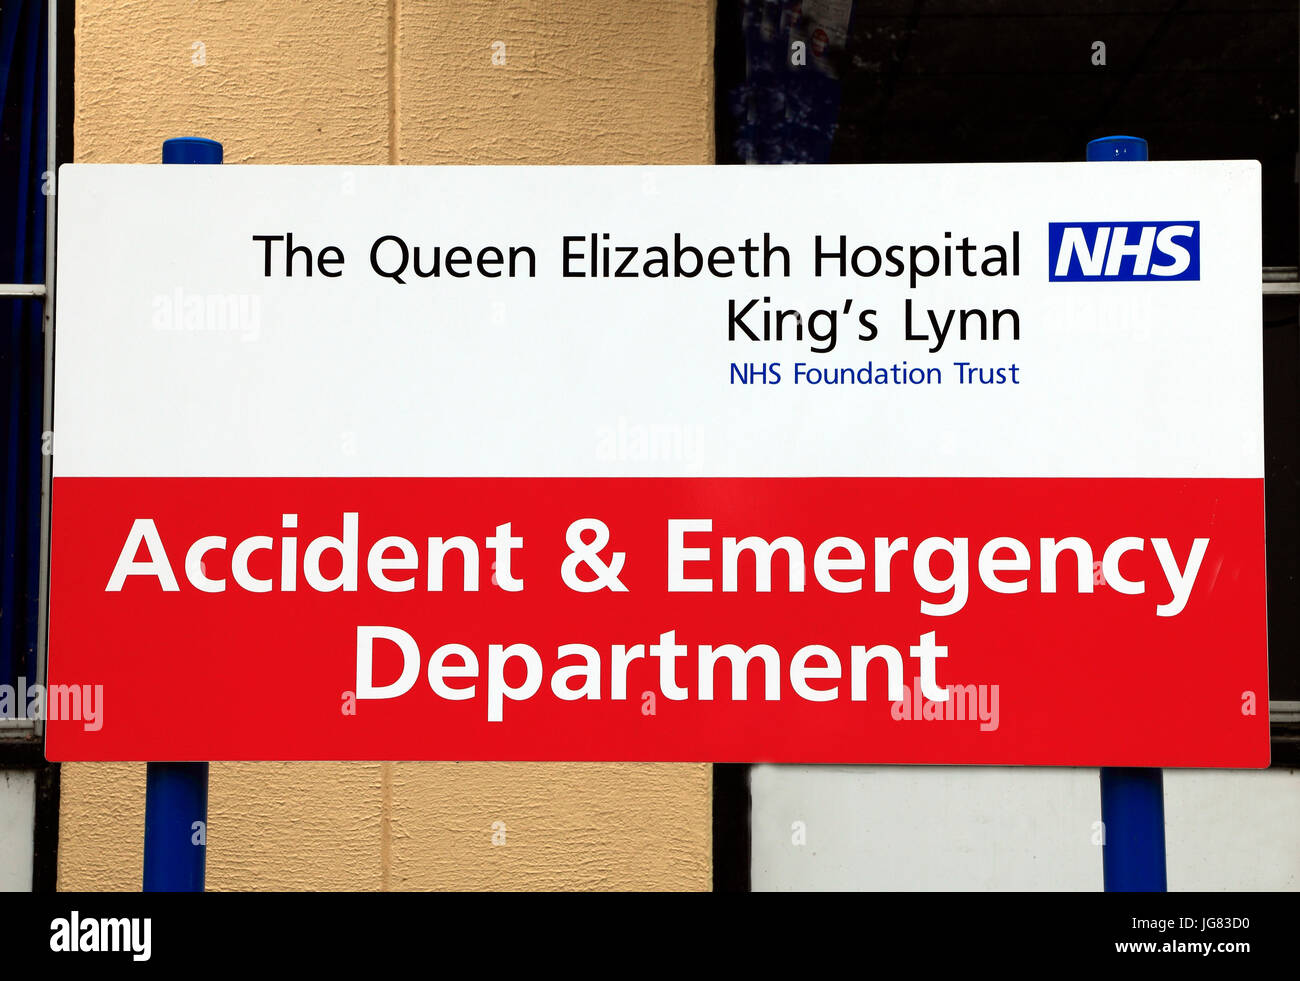 Queen Elizabeth Hospital, Kings Lynn, accidents et urgences, signe, l'anglais, les hôpitaux du NHS Norfolk, England, UK Banque D'Images